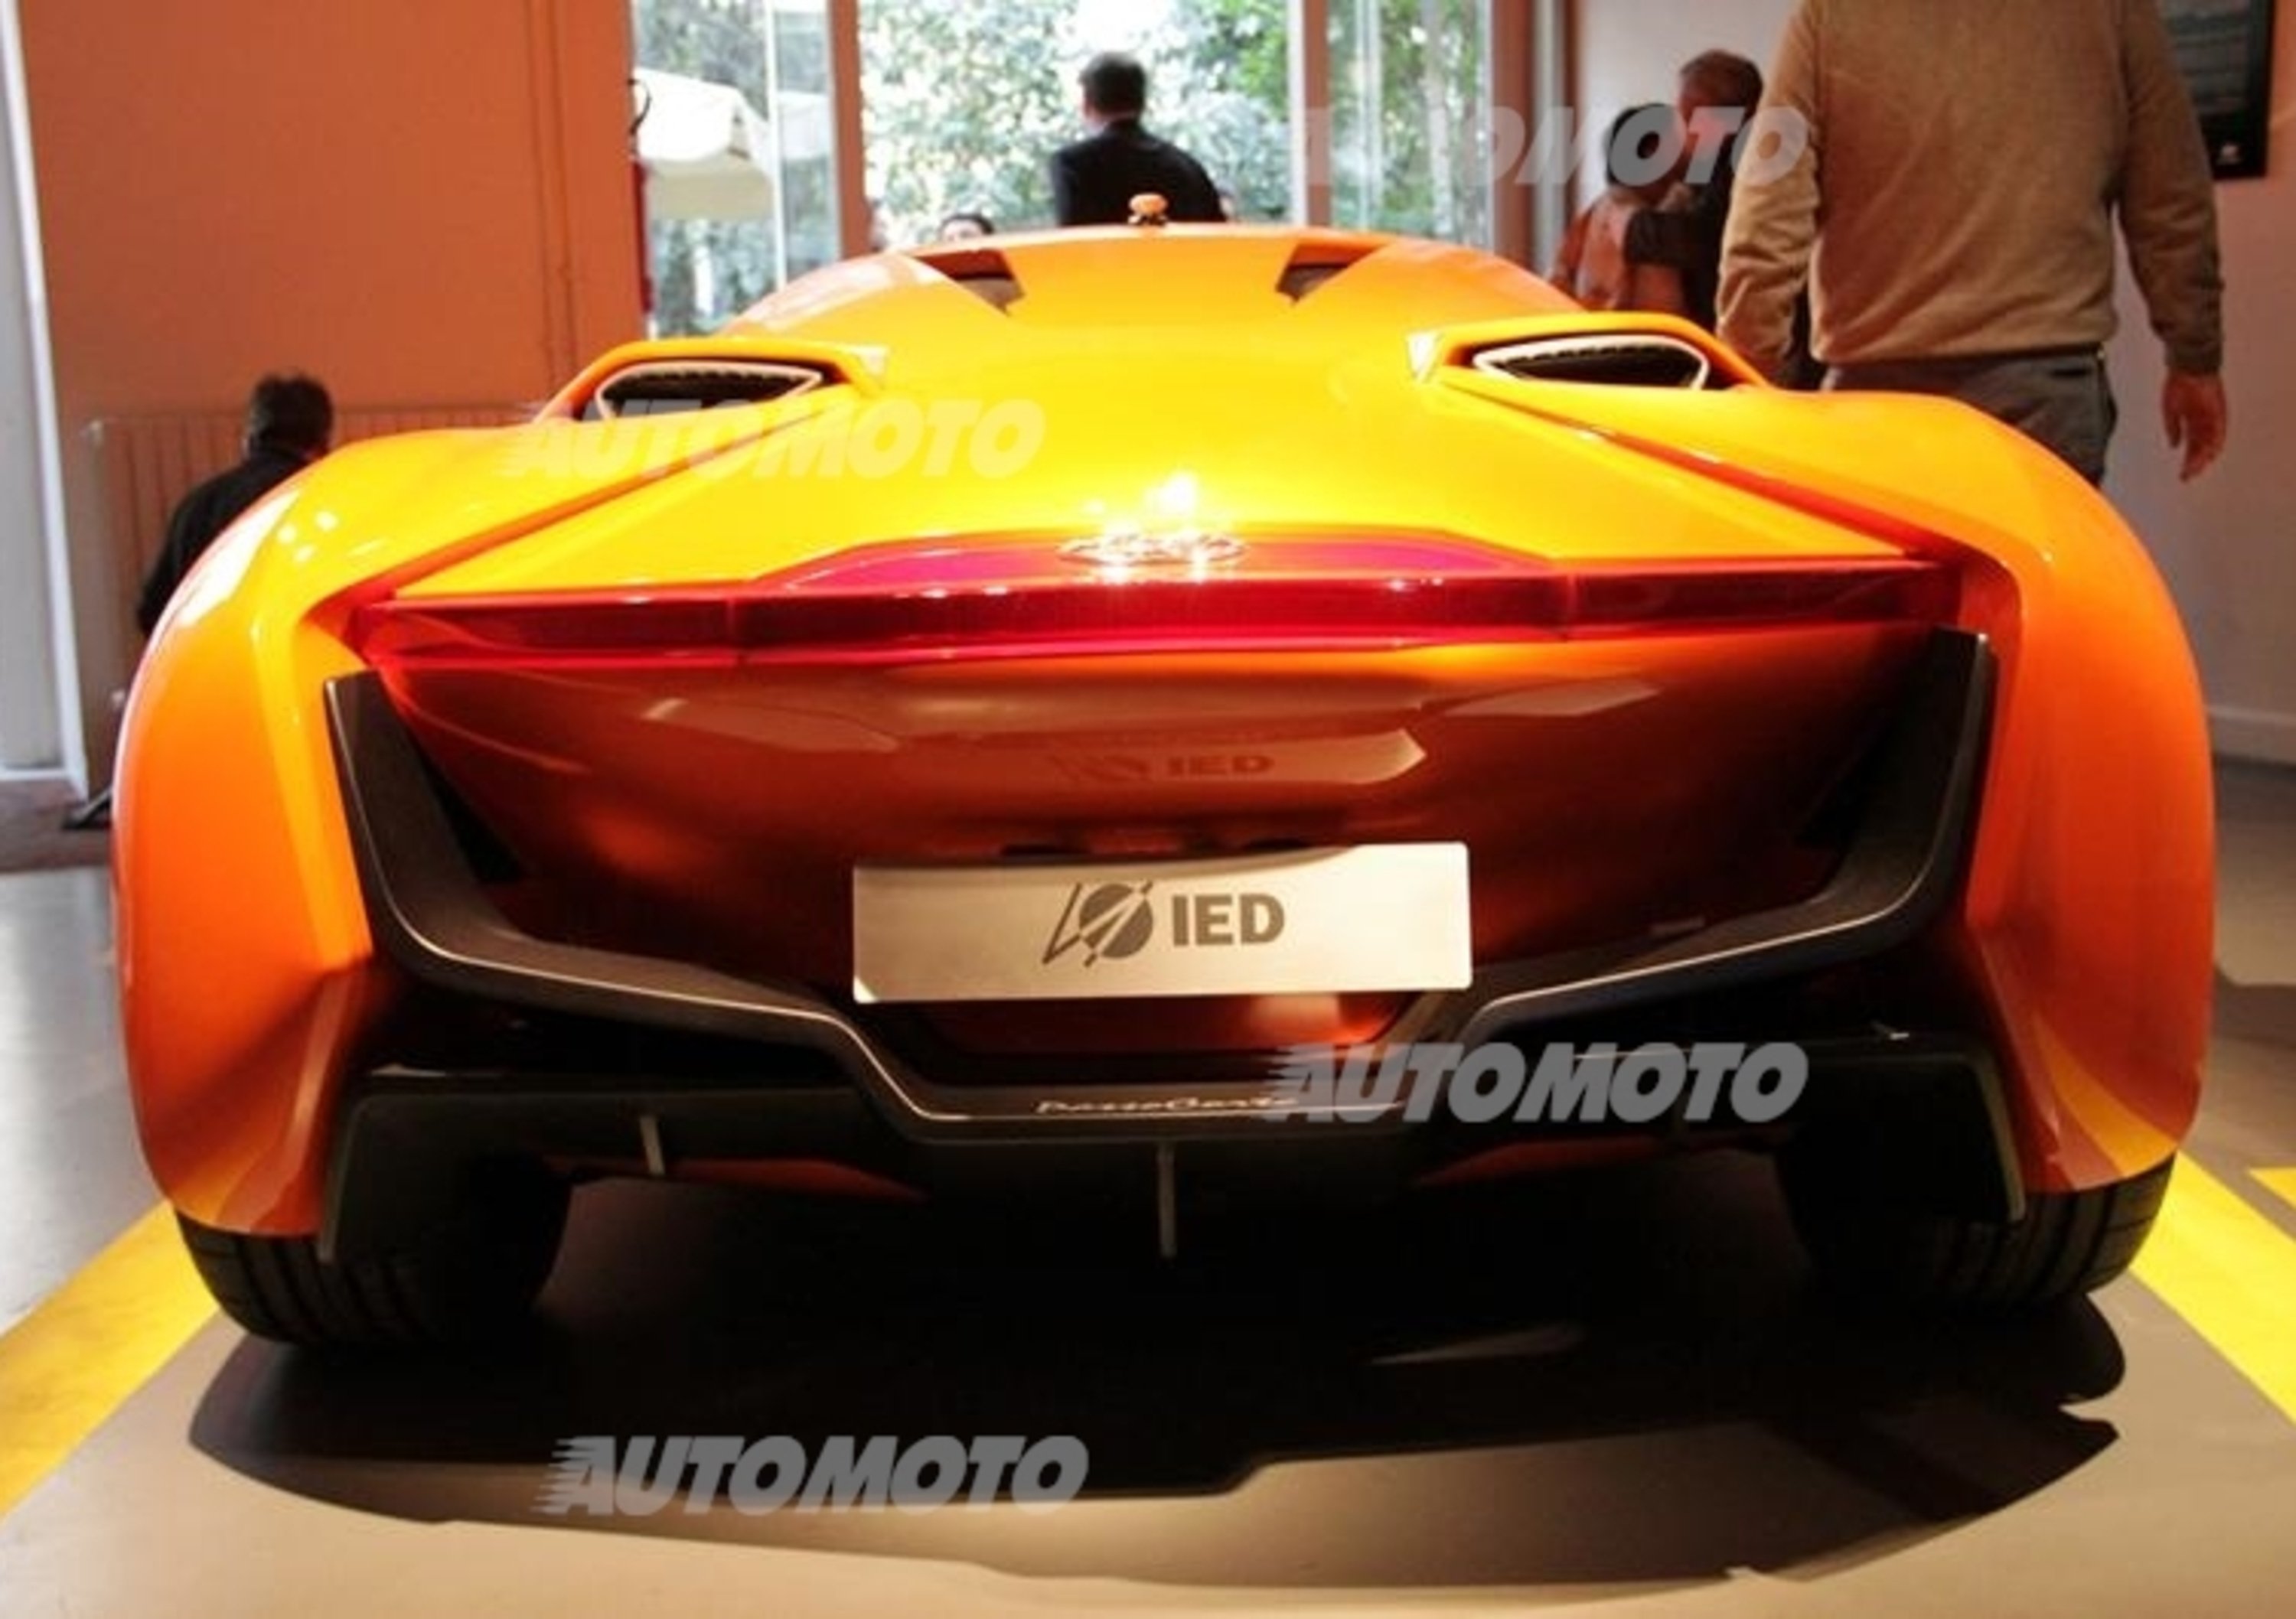 Hyundai protagonista del Fuorisalone con lo IED e con la concept PassoCorto